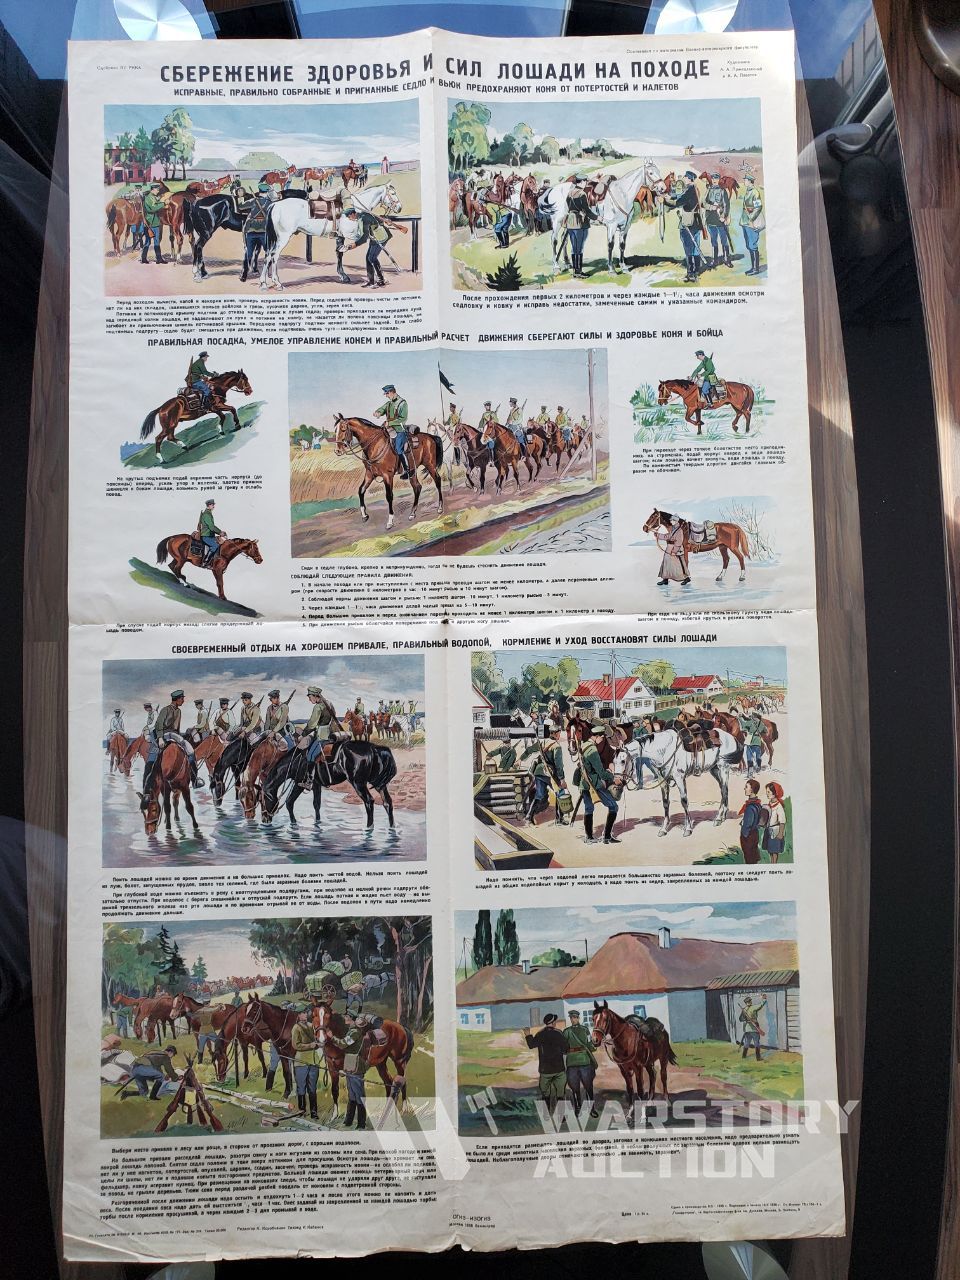 Плакат “Сбережение здоровья и сил лошади на походе”